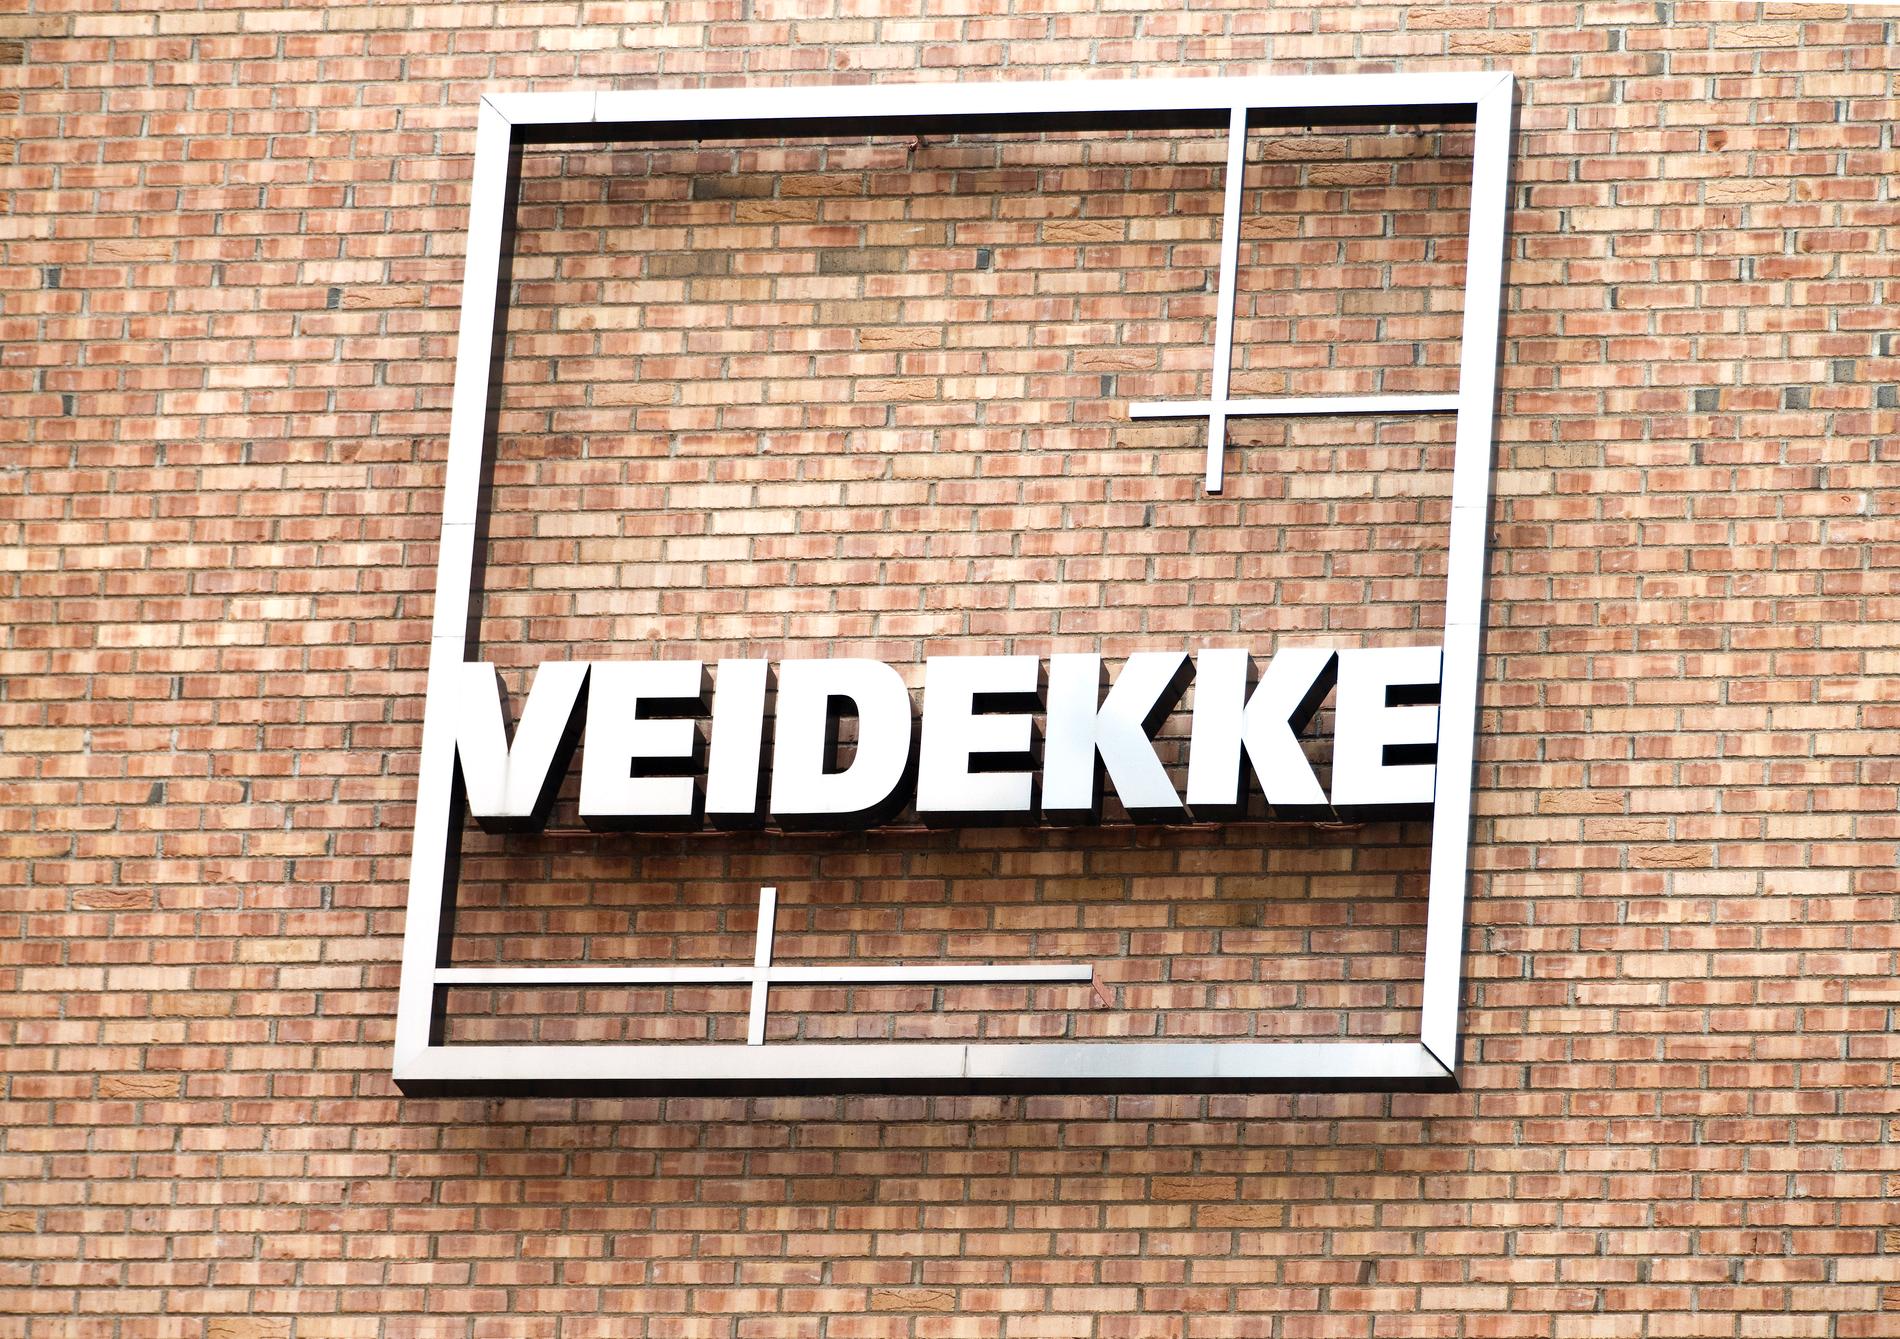 Det norska byggföretaget Veidekke sprängde utan tillstånd. Arkivbild.